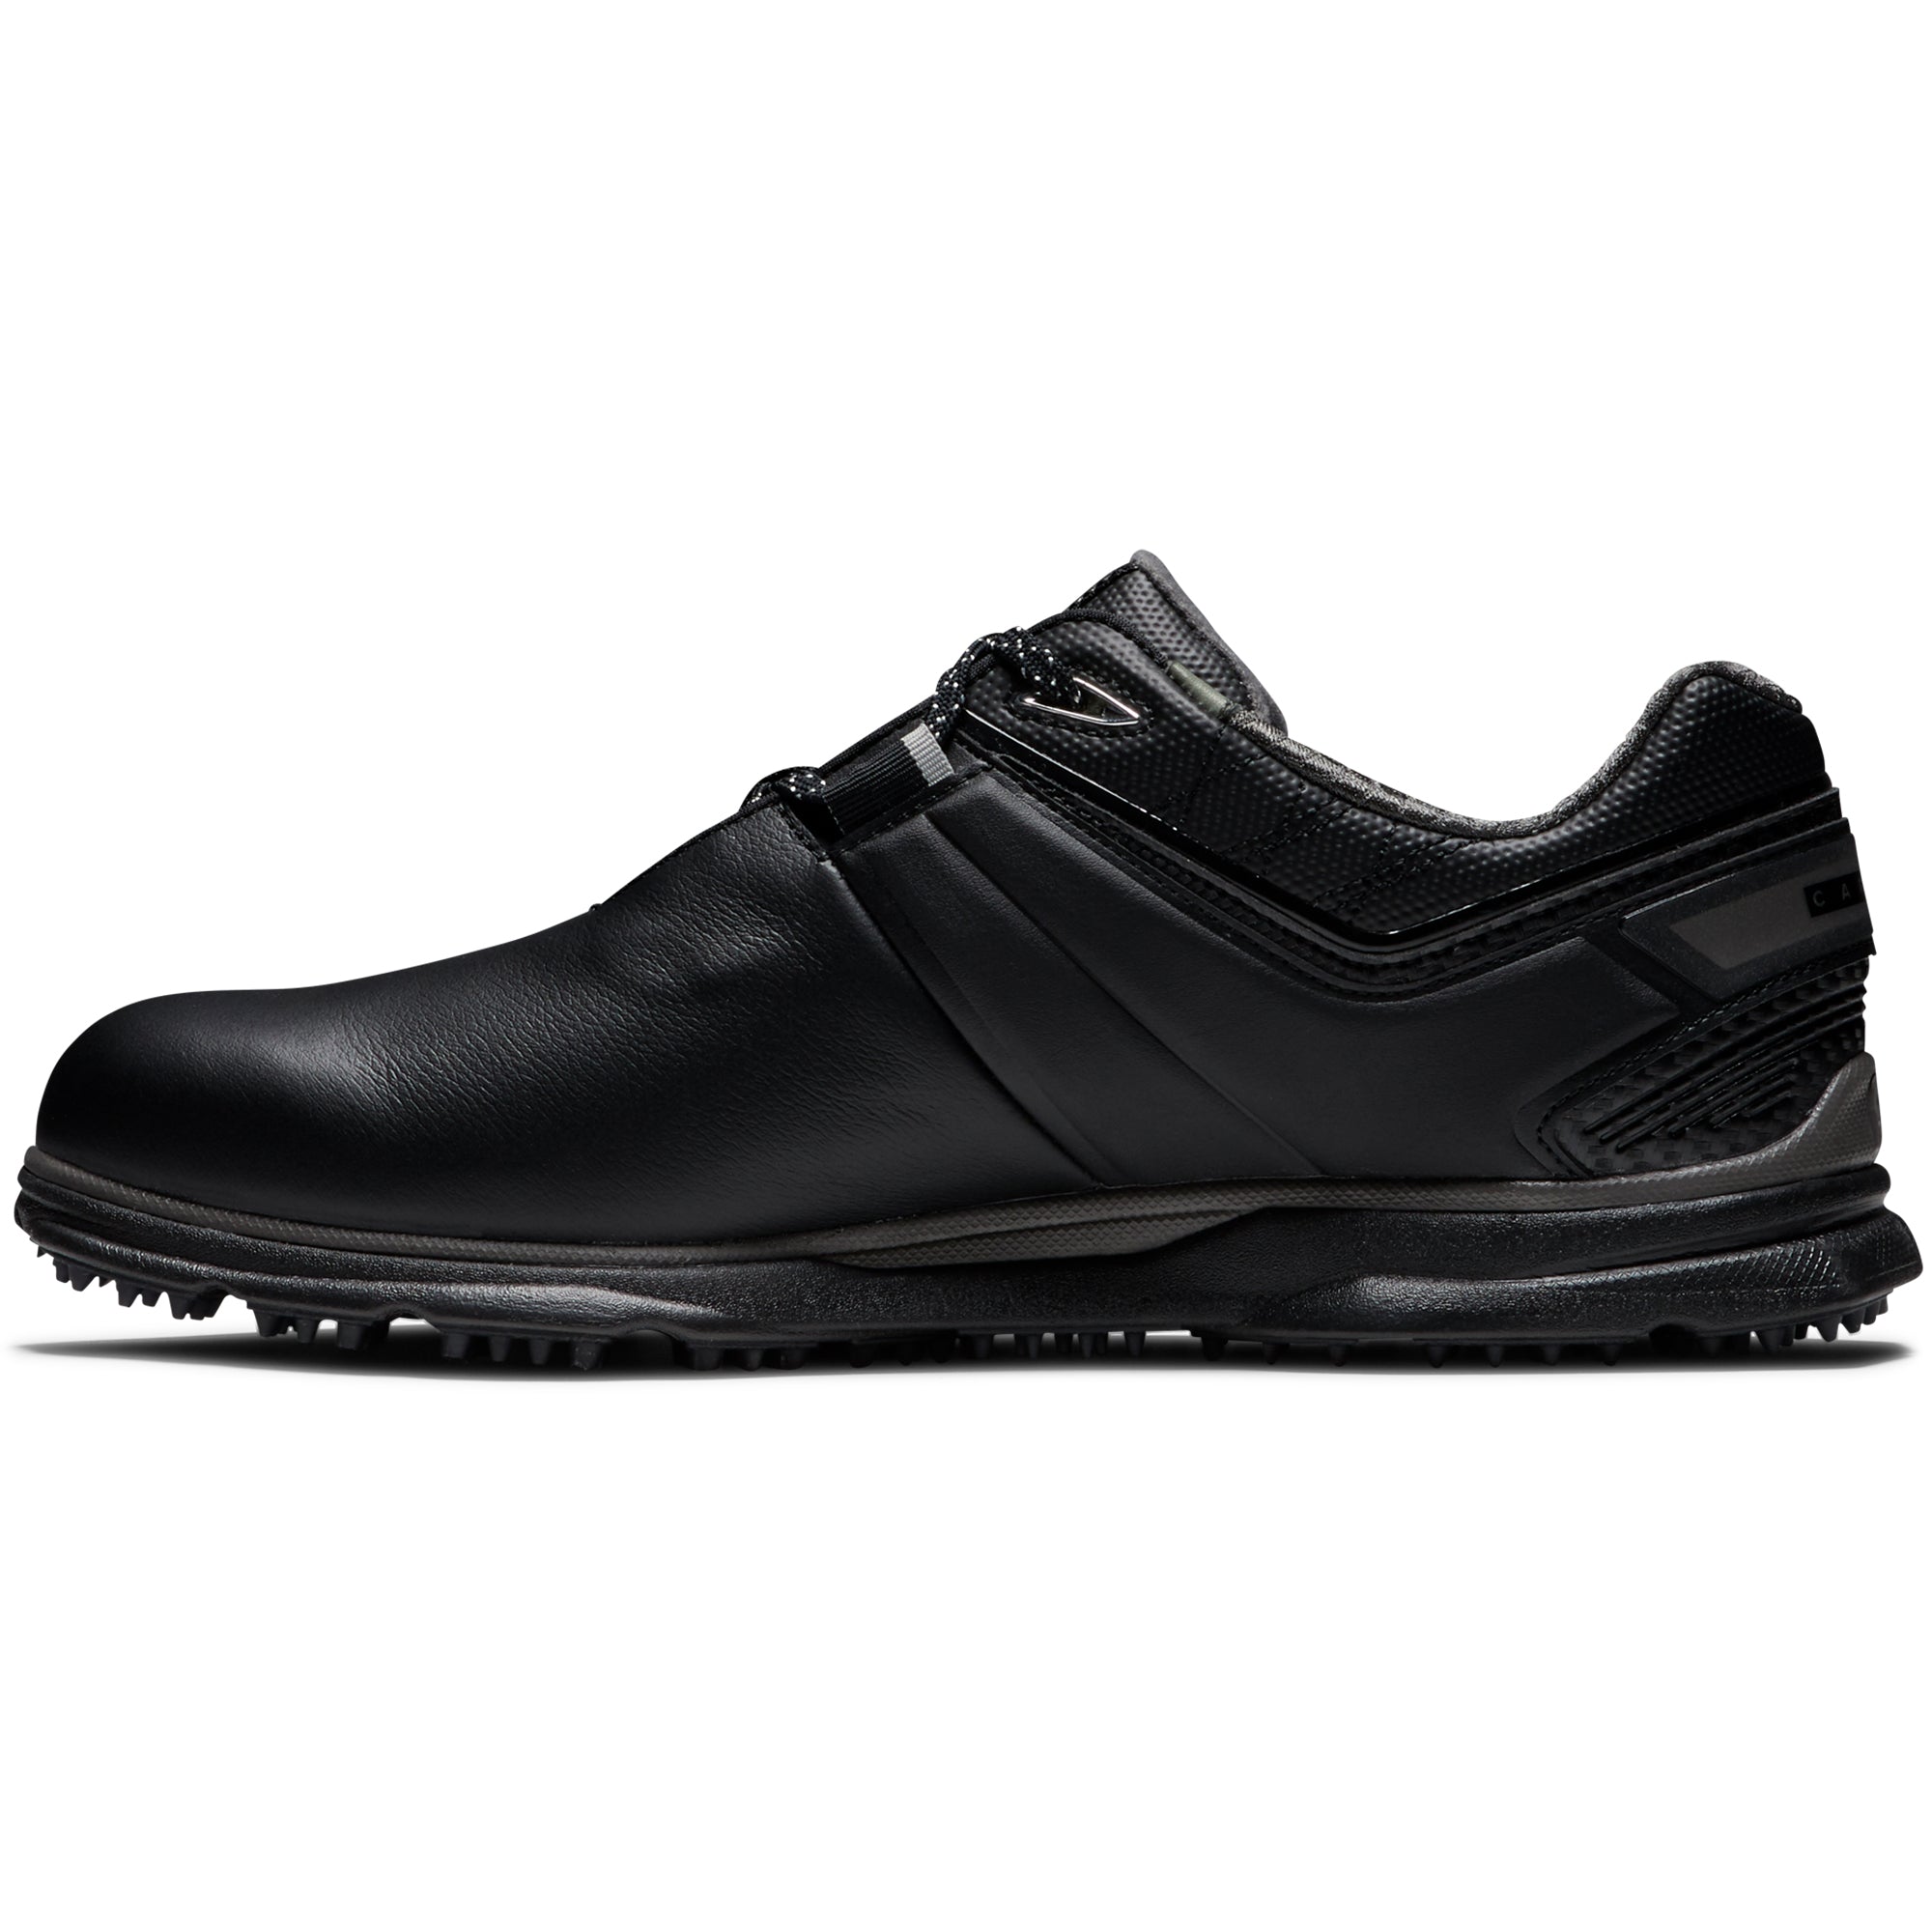 FootJoy Pro SL Carbon Golf Shoes